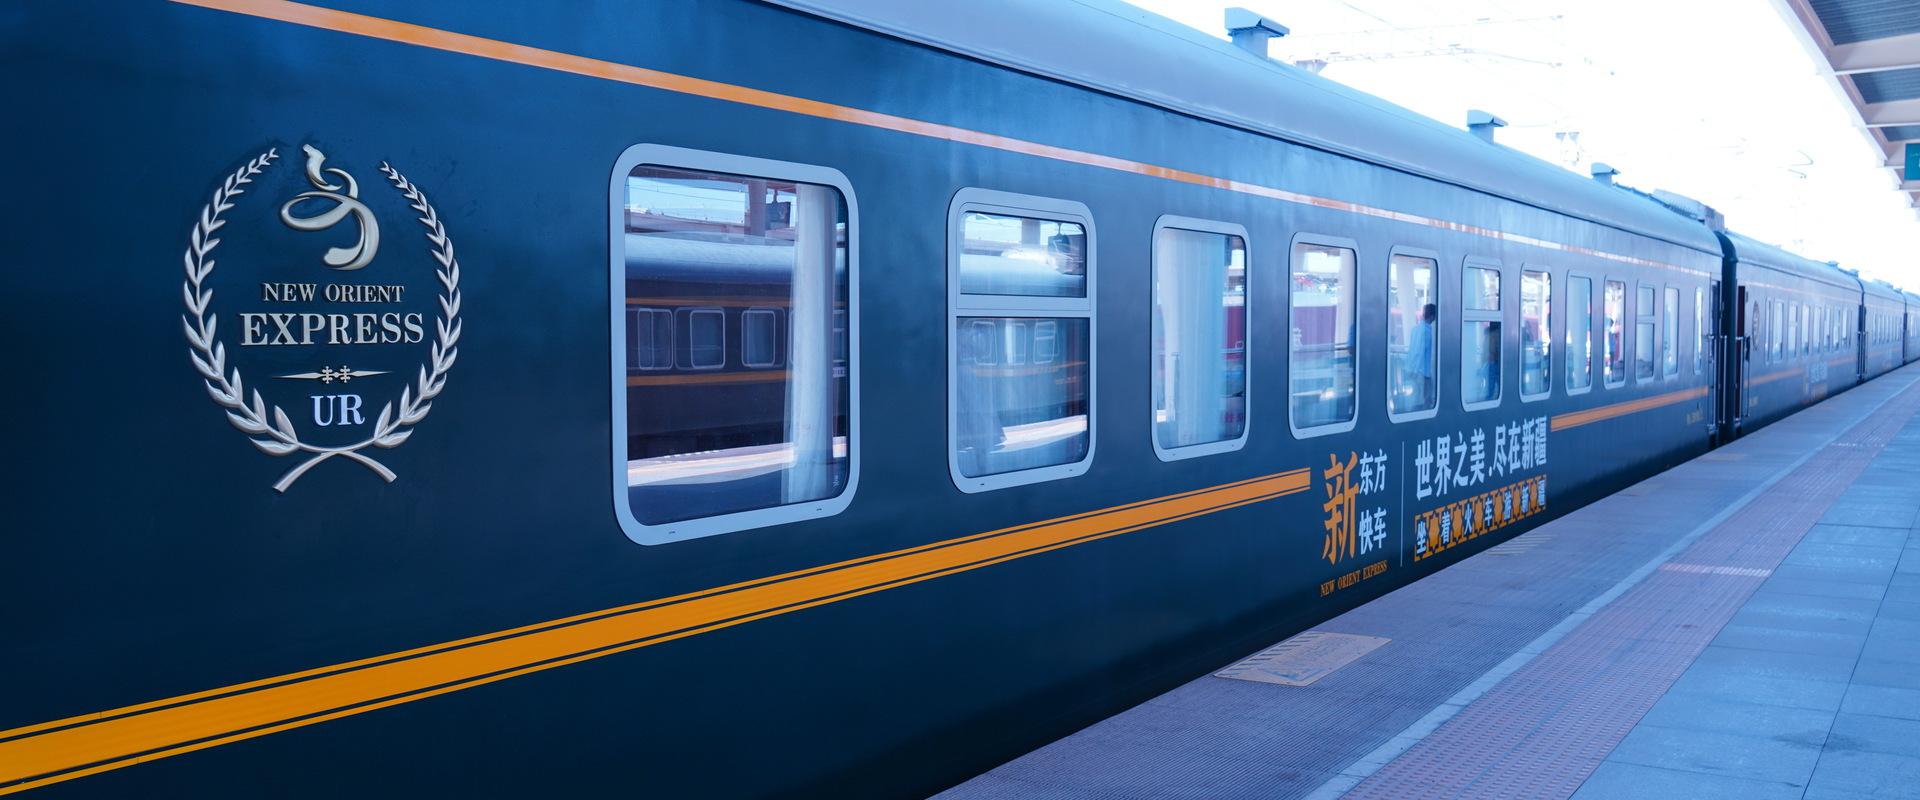 近铁新型名阪特快列车“Hinotori”将于2020年3月14日炫丽登场_资讯频道_悦游全球旅行网